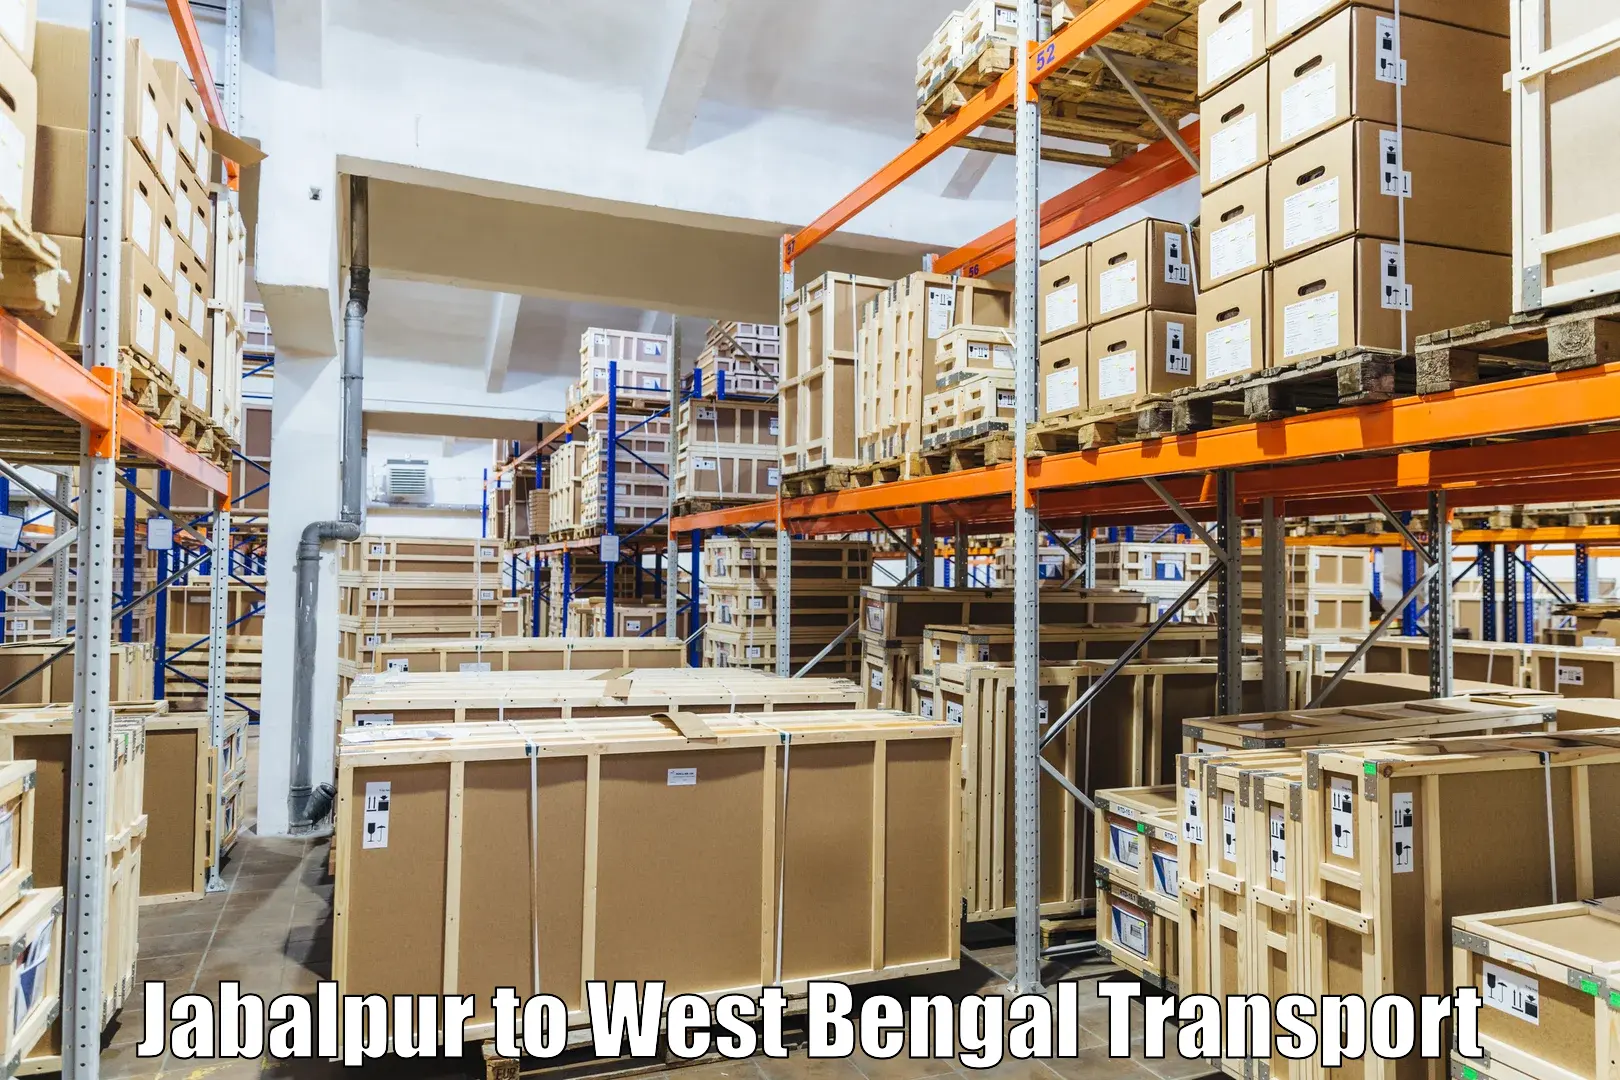 Container transport service Jabalpur to IIIT Kalyani